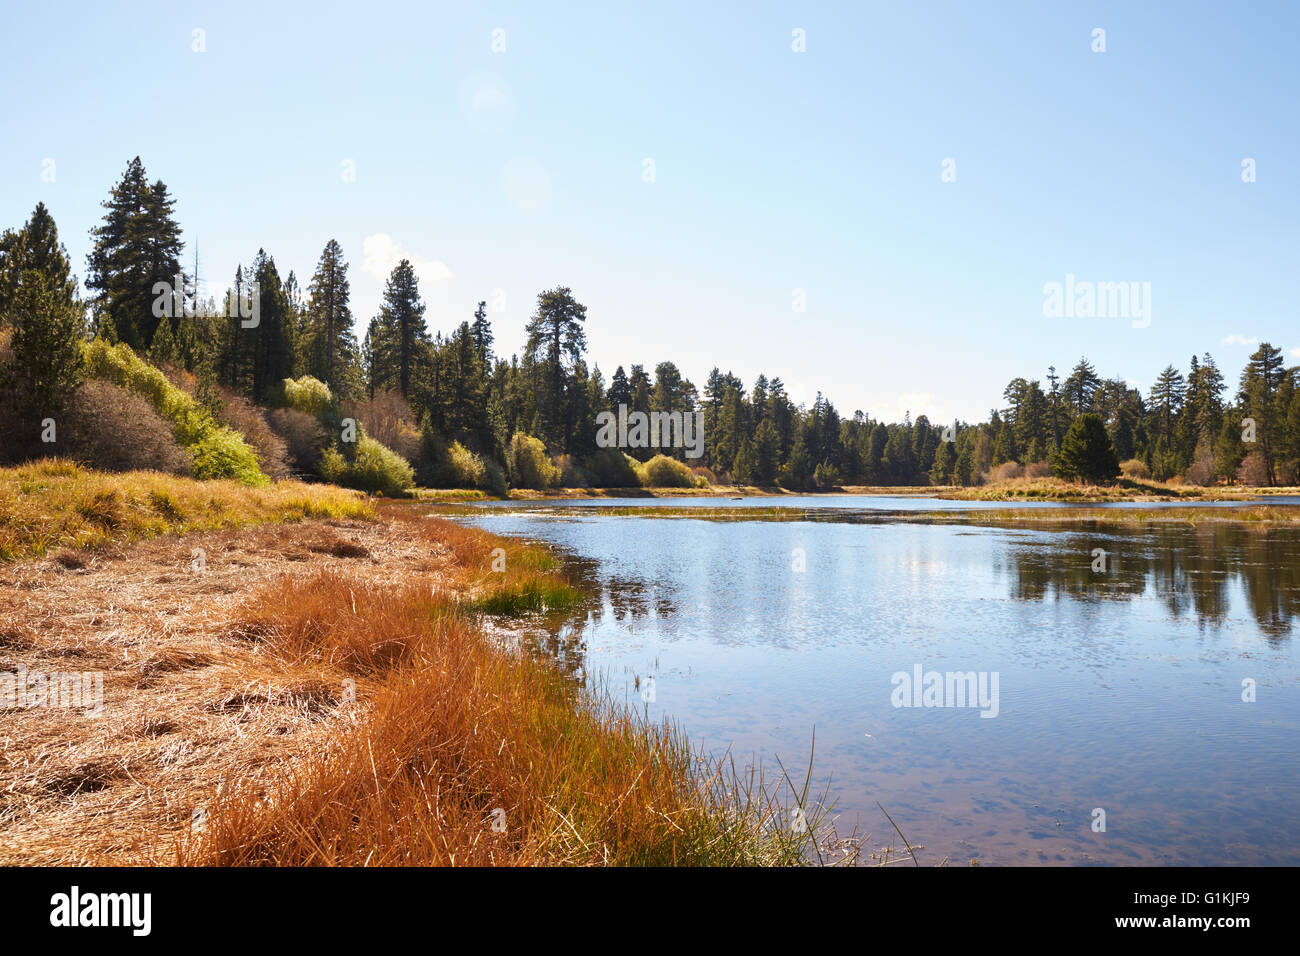 Lake and landscape, Bluff Lake, Big Bear, California, USA Stock Photo